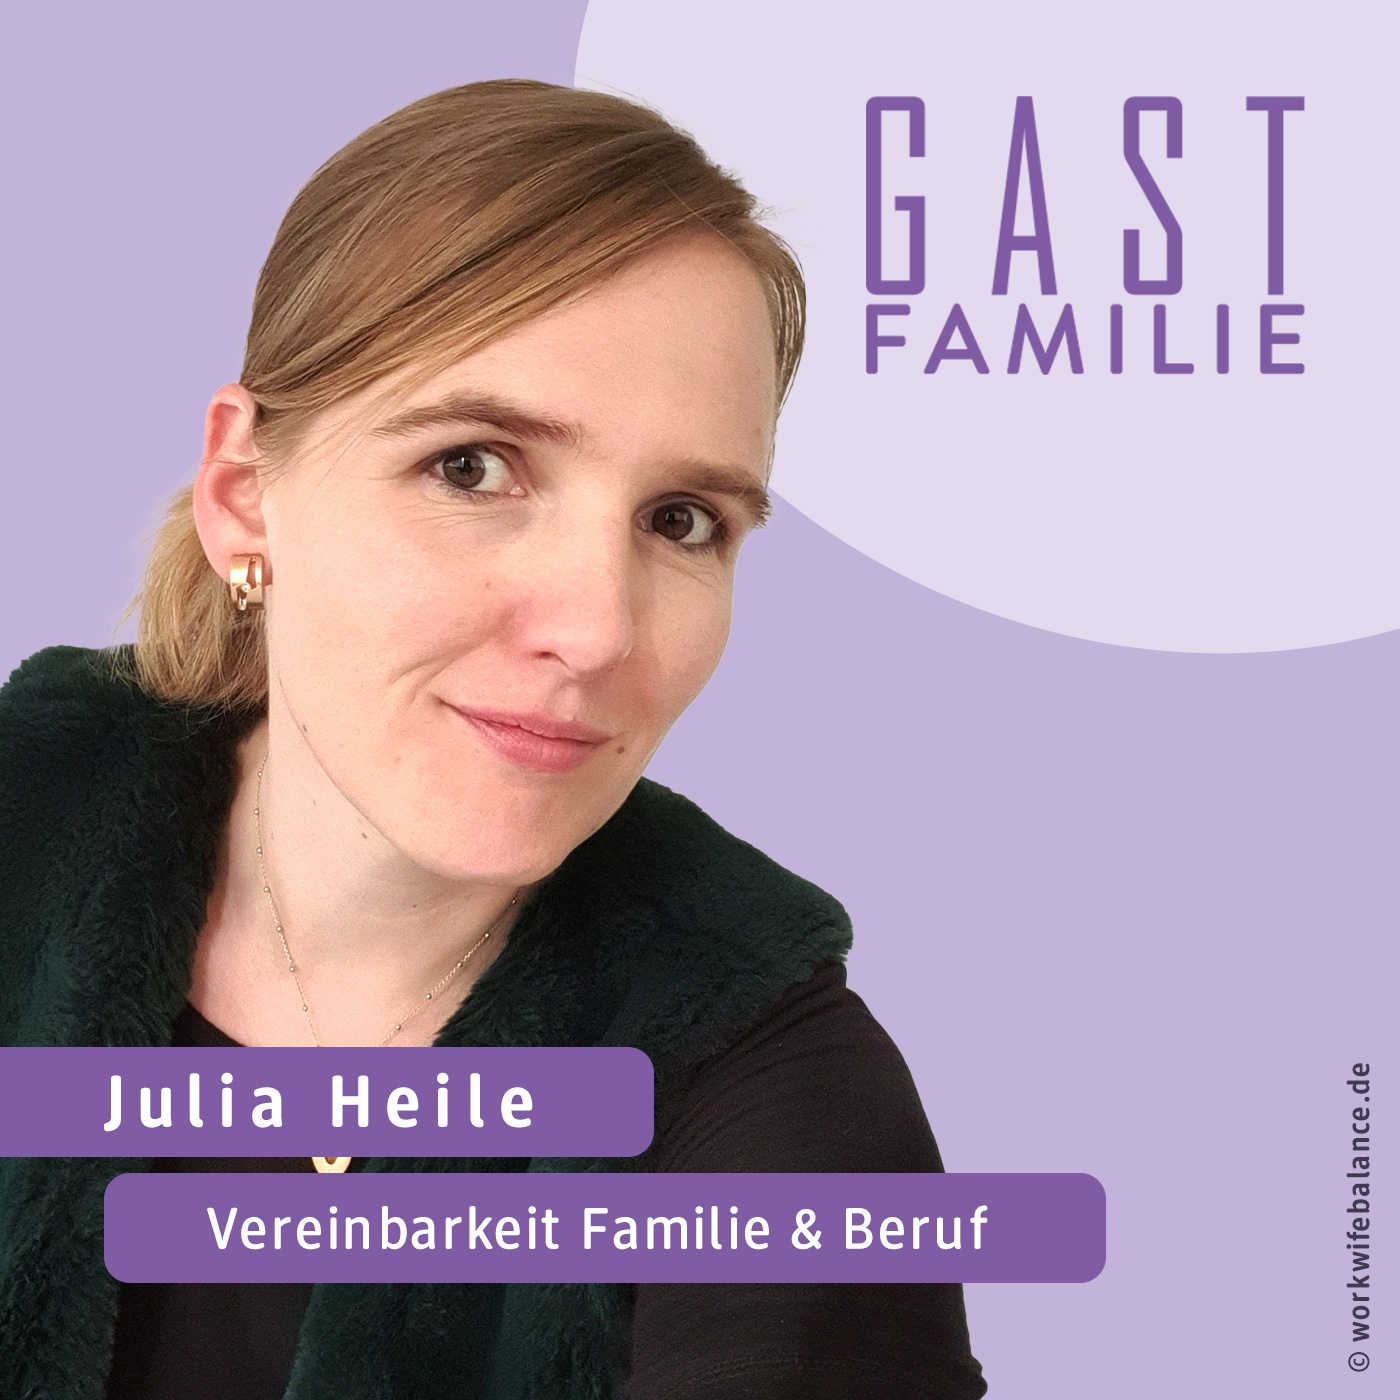 Wie lassen sich Job und Familie gut vereinbaren, Julia Heile?